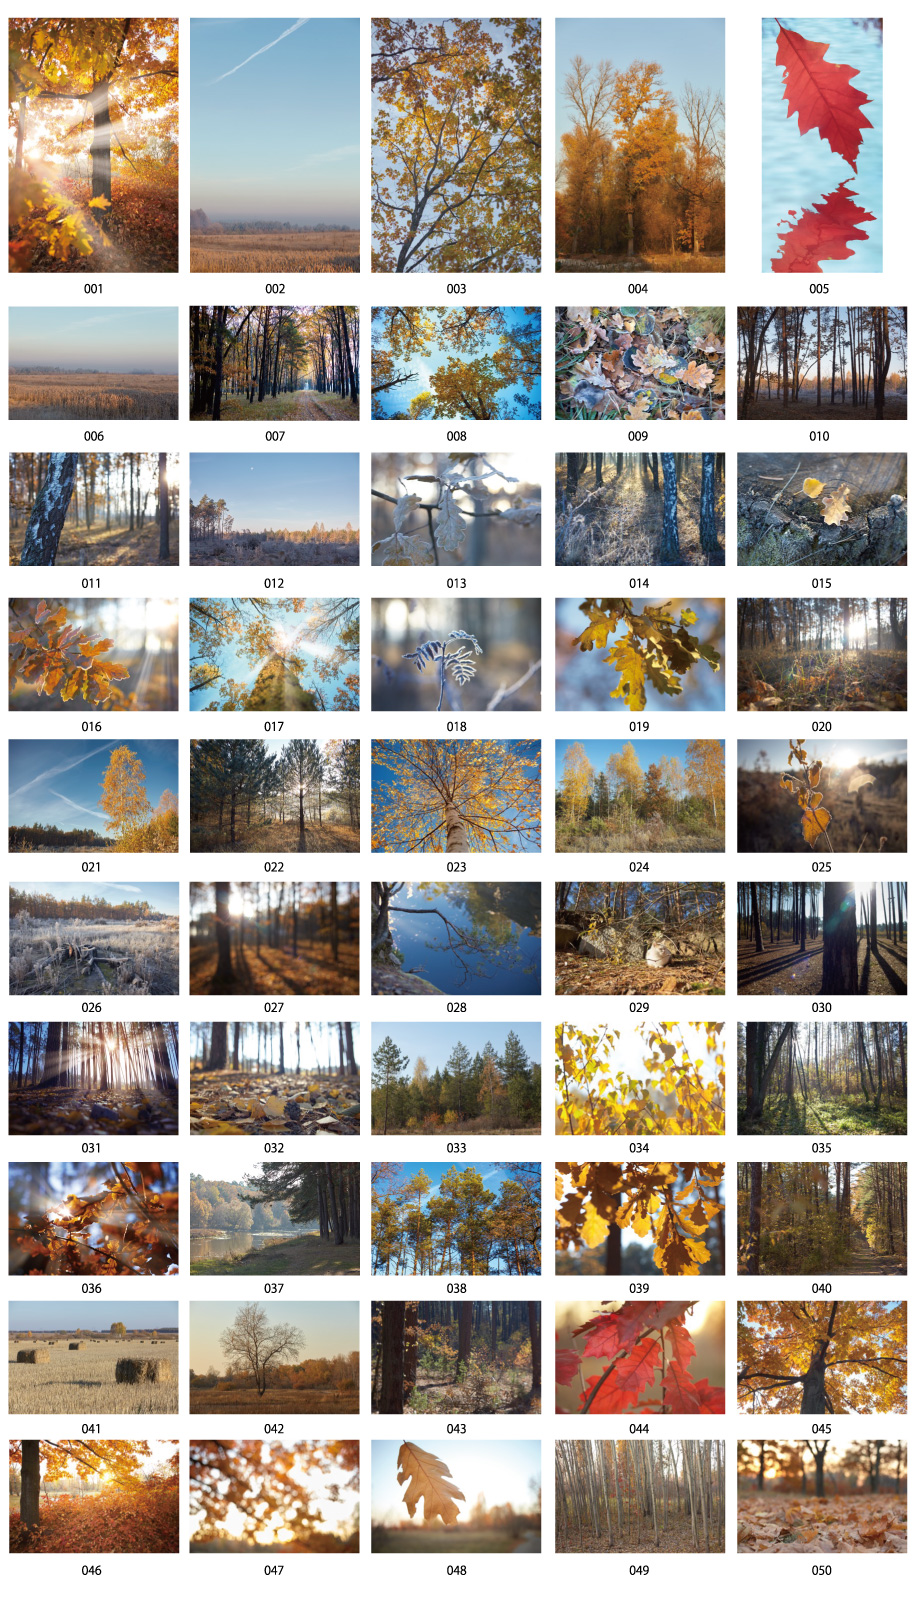 冬季森林照片材料